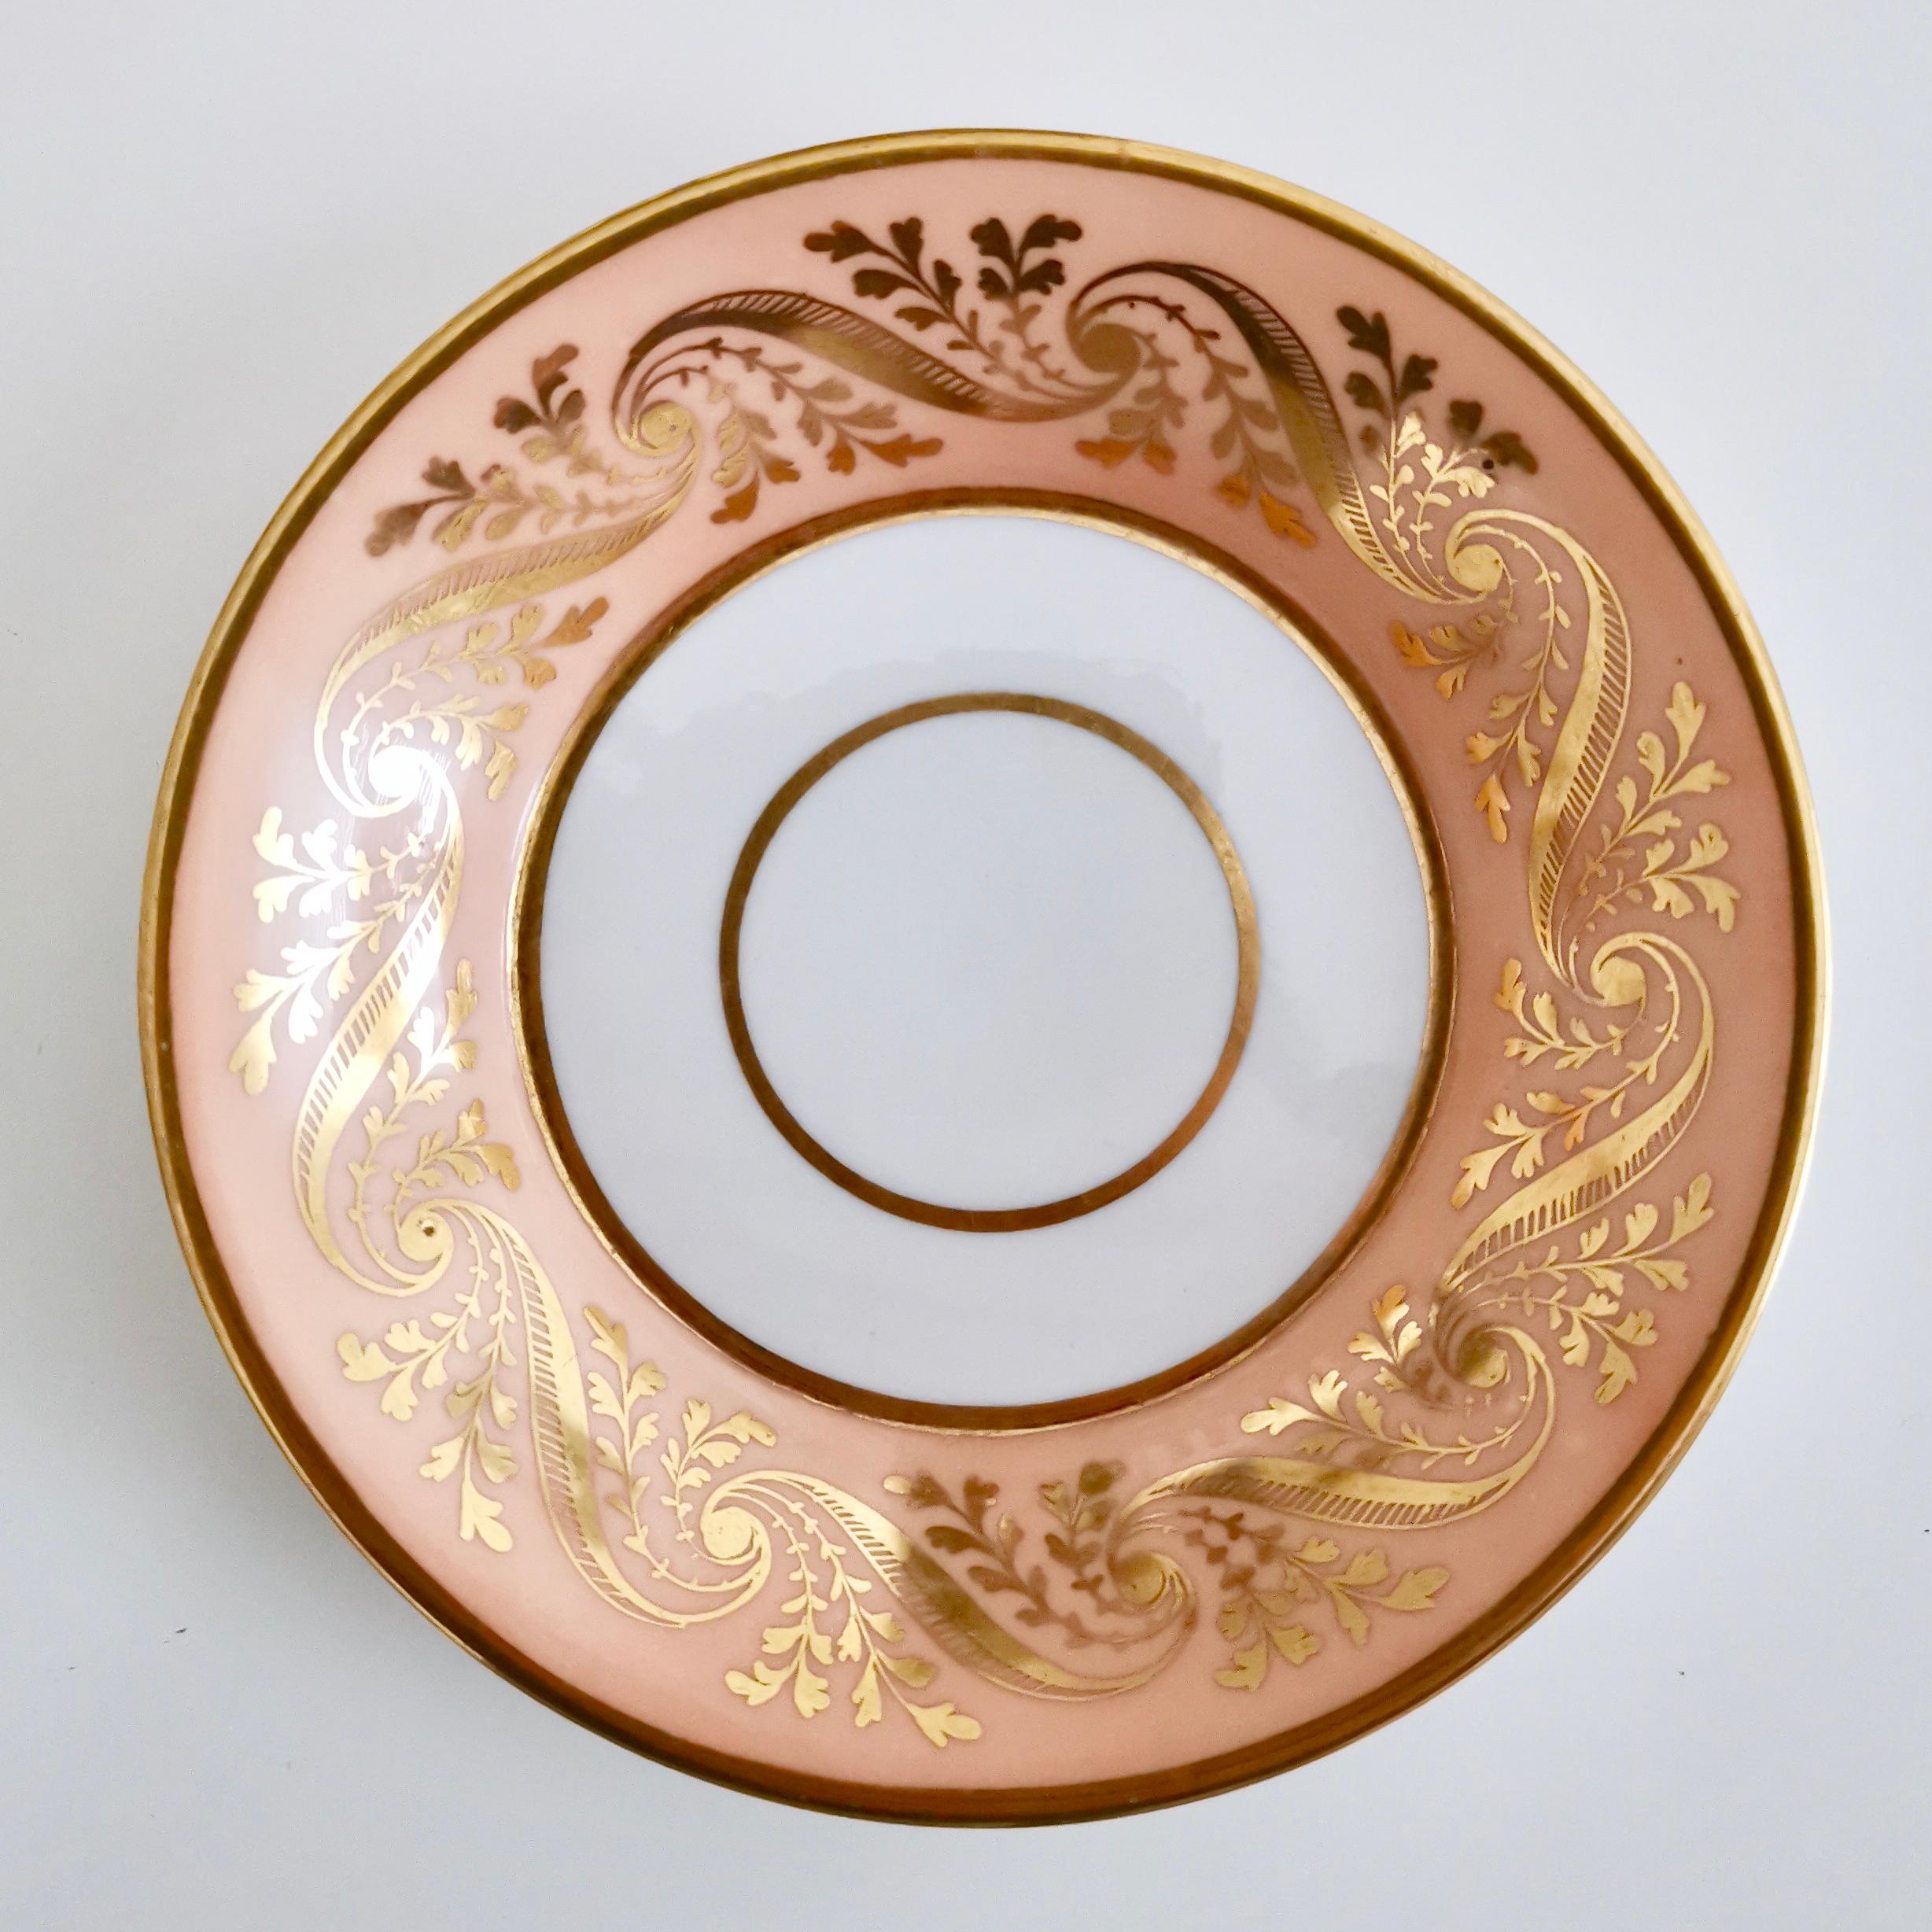 Hand-Painted Flight and Barr Porcelain Teacup, Peach with Gilt, Georgian 1795-1804